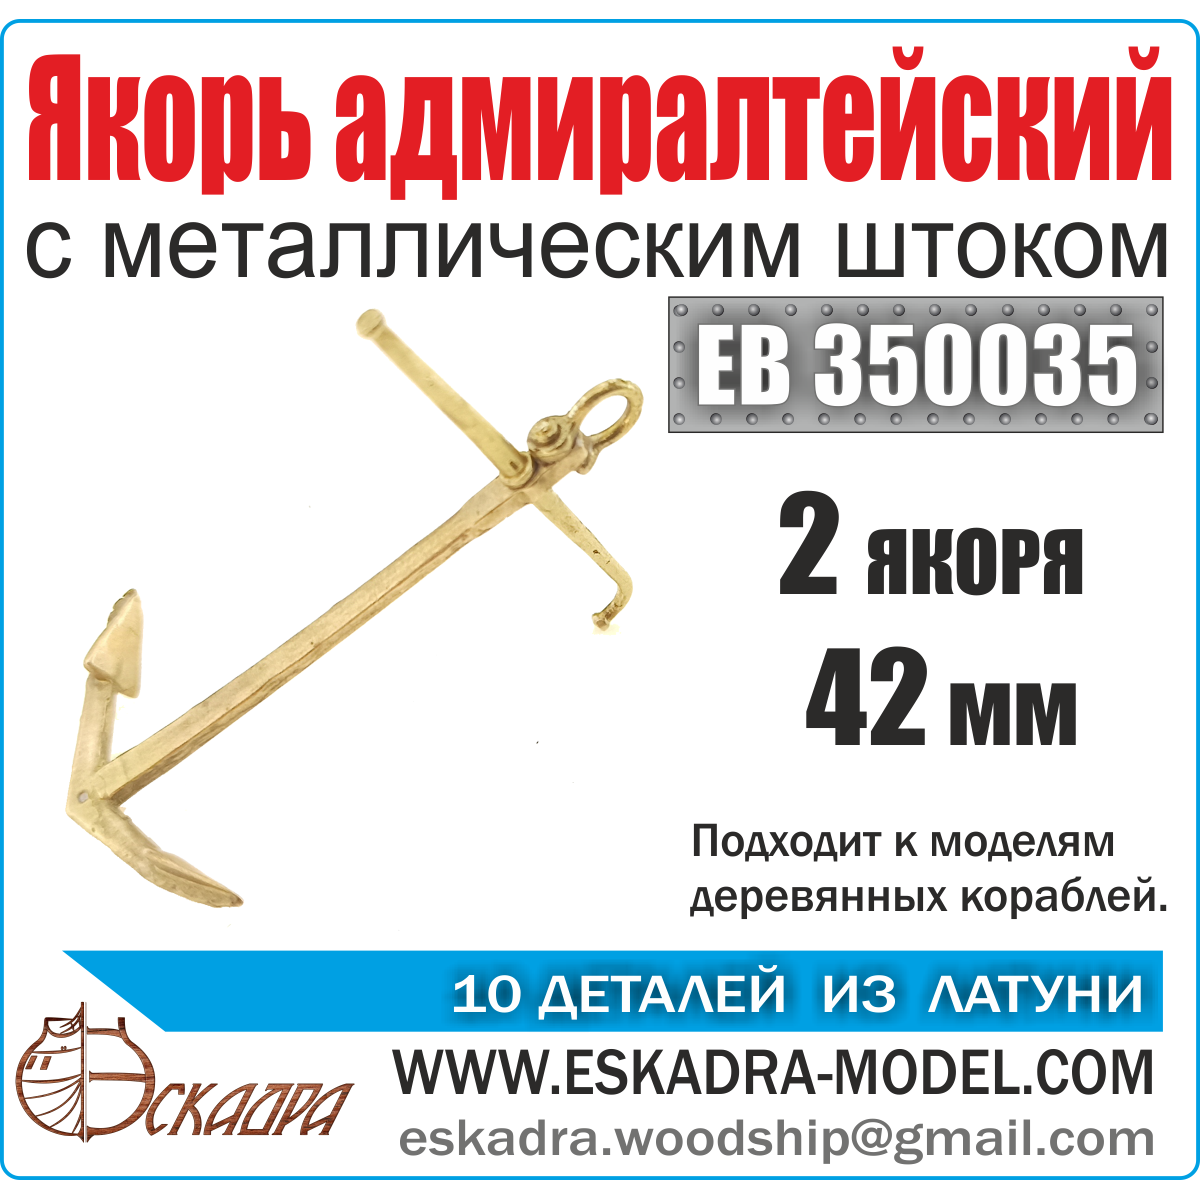 EK 0004  дополнения из металла  Якорь адмиралтейский 42 мм с металическим  штоком (уп.2 шт)  (1:72)